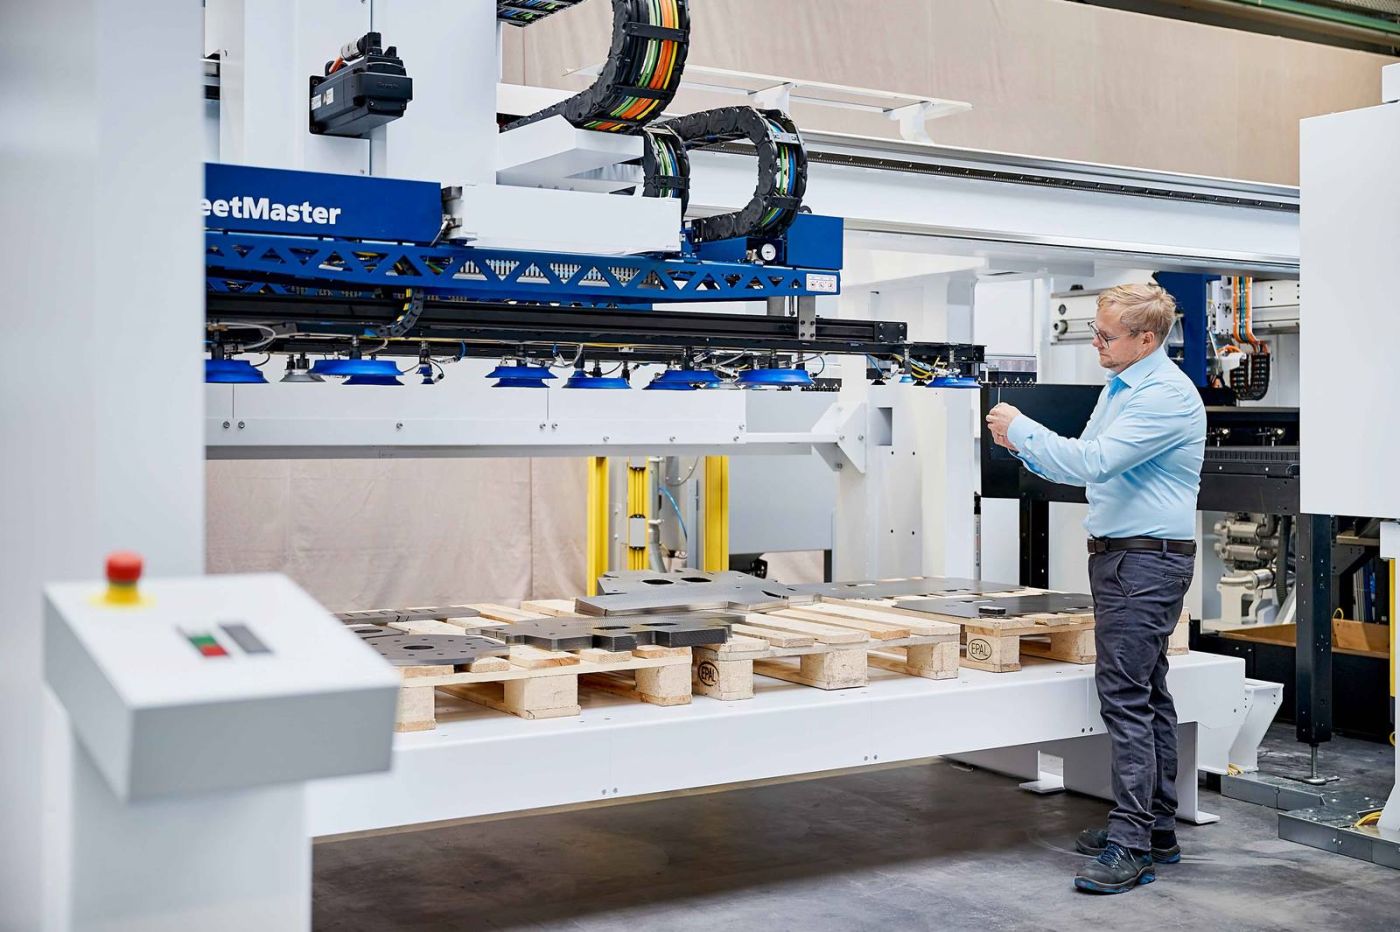 Mit dem neuen SheetMaster ermöglicht die TruMatic 5000 einen vollautomatischen Materialfluss in der Fertigungszelle – von der Be- und Entladung der Maschine bis zum Ausschleusen der bearbeiteten Teile. (Quelle: Trumpf)